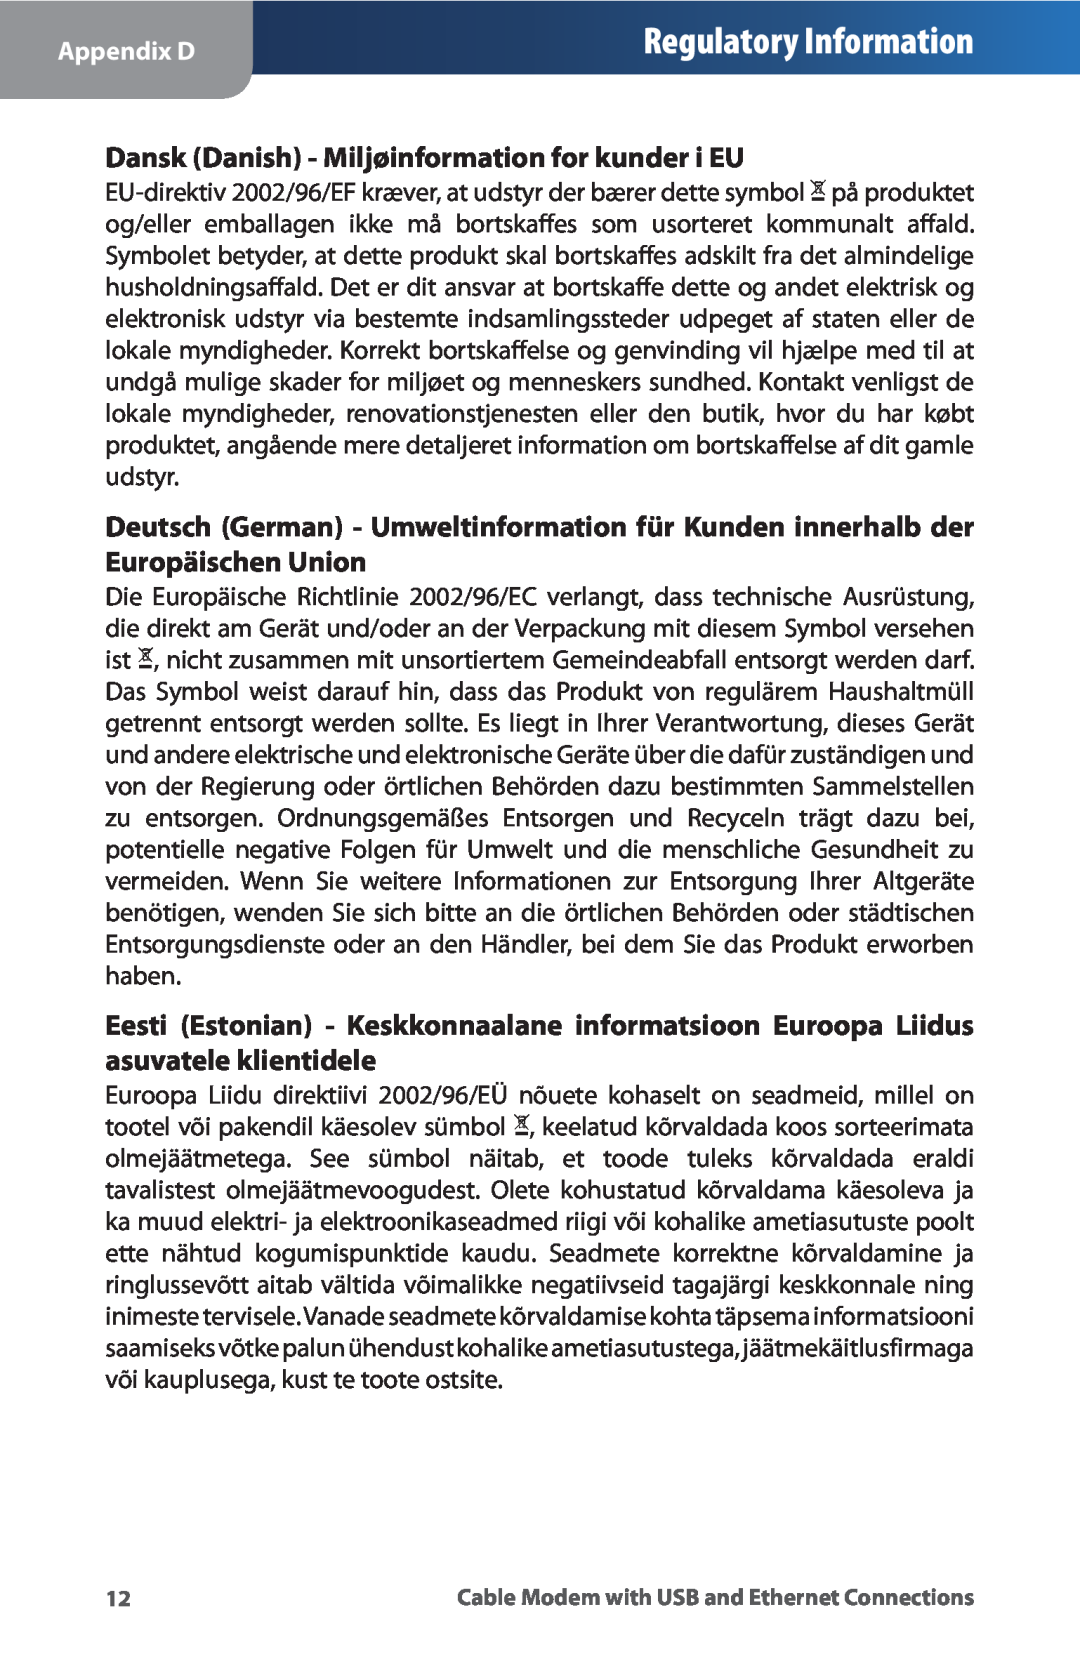 Linksys CM100 manual Regulatory Information, Dansk Danish - Miljøinformation for kunder i EU 